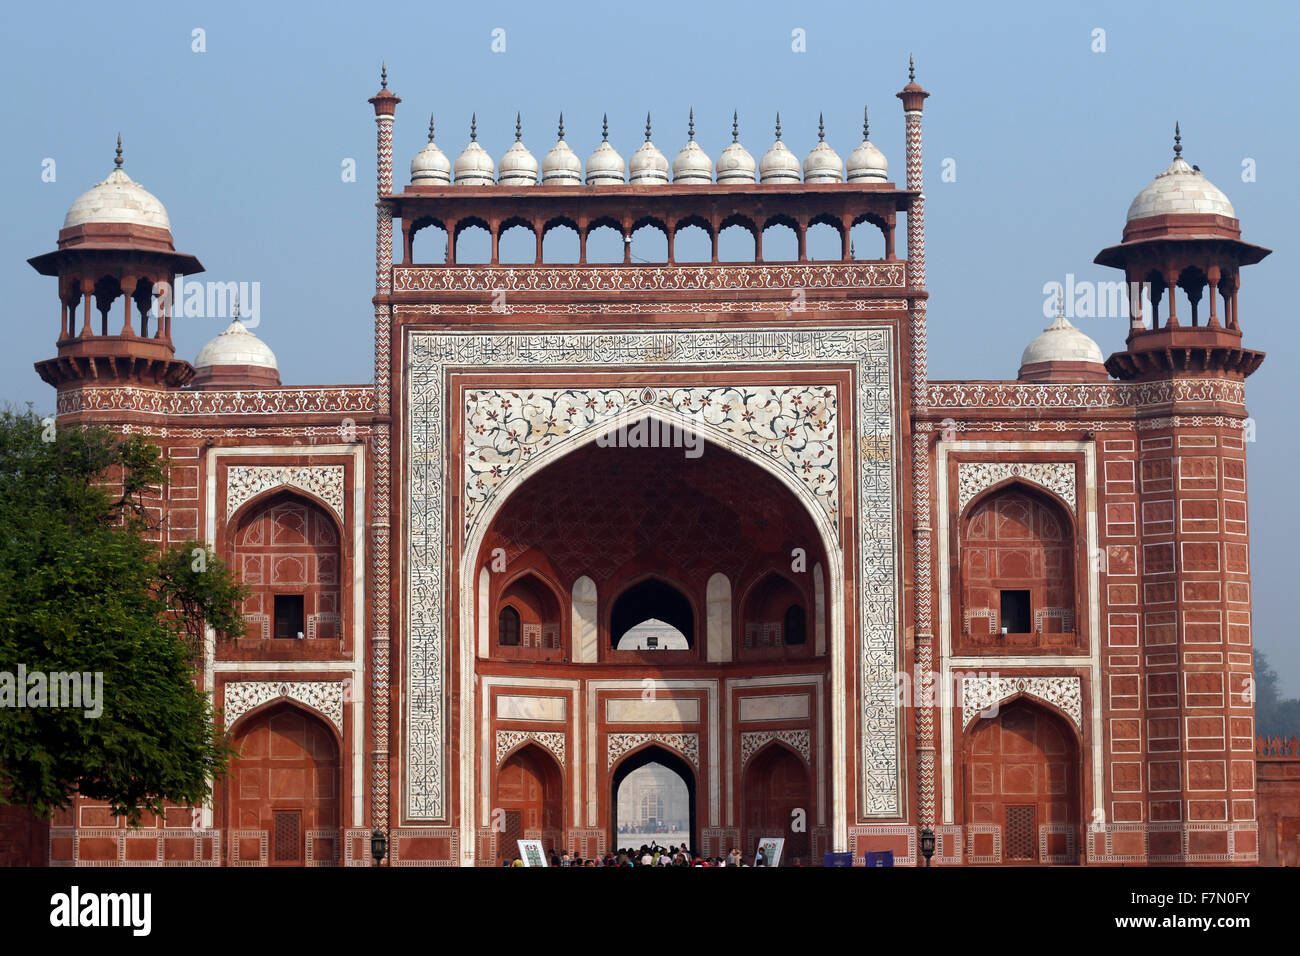 Bunt, indische Architektur, Architektur, antike Architektur, Mugal Architektur, Fenster Architektur Stockfoto